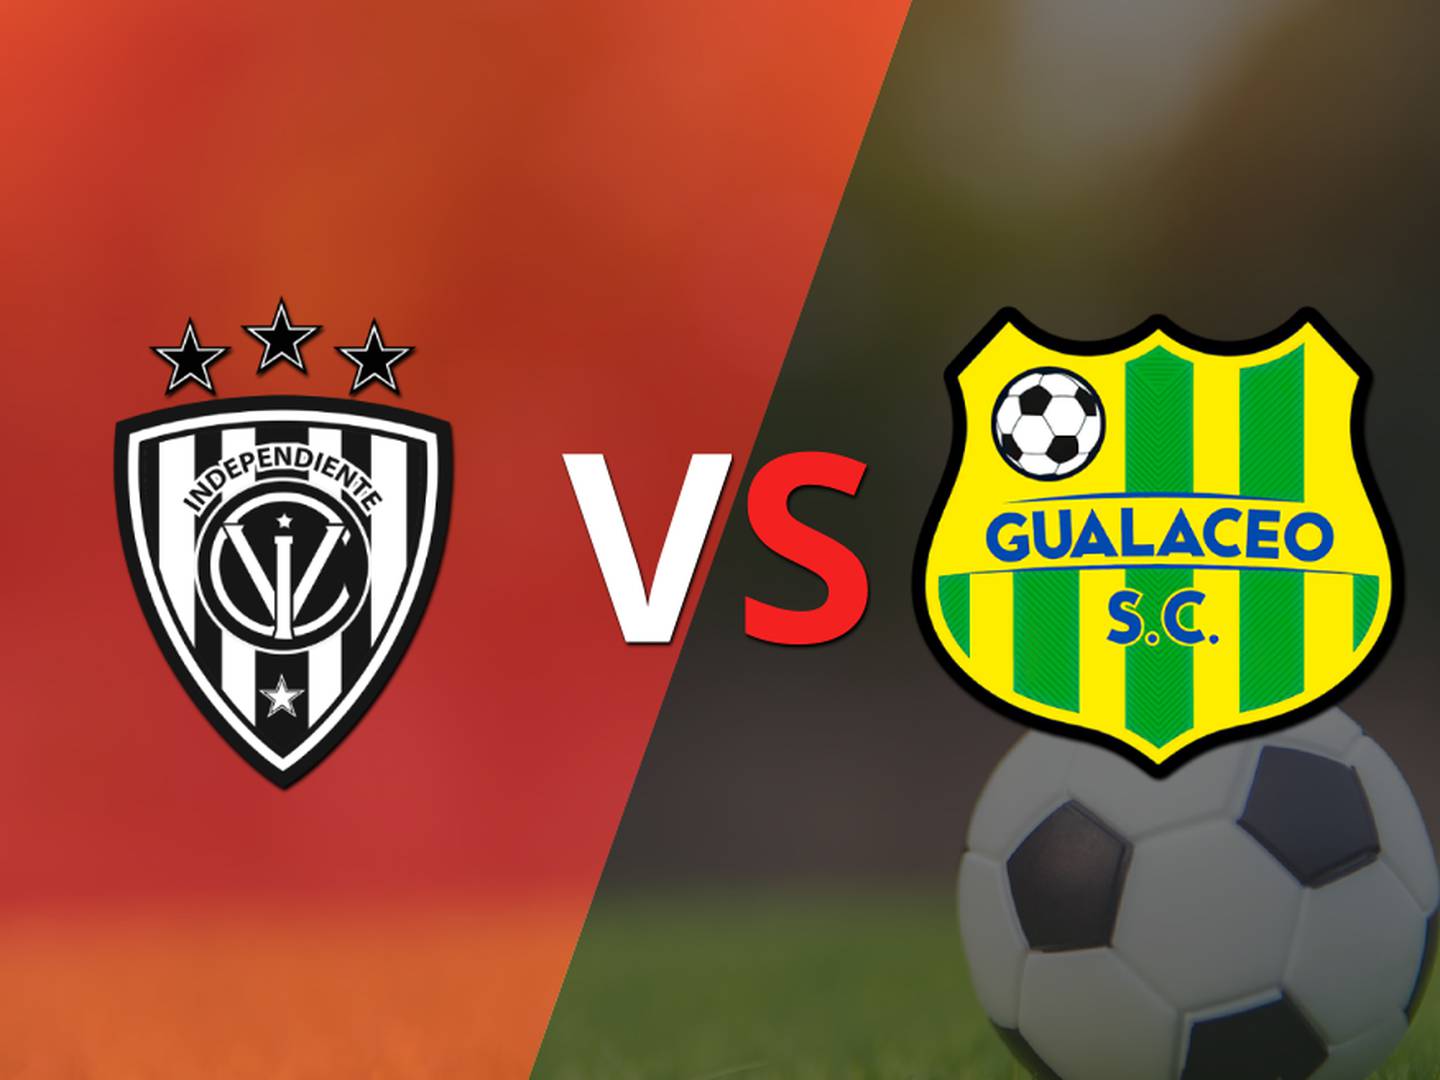 Ecuador – Primera División: Independiente del Valle vs Gualaceo Fecha 9